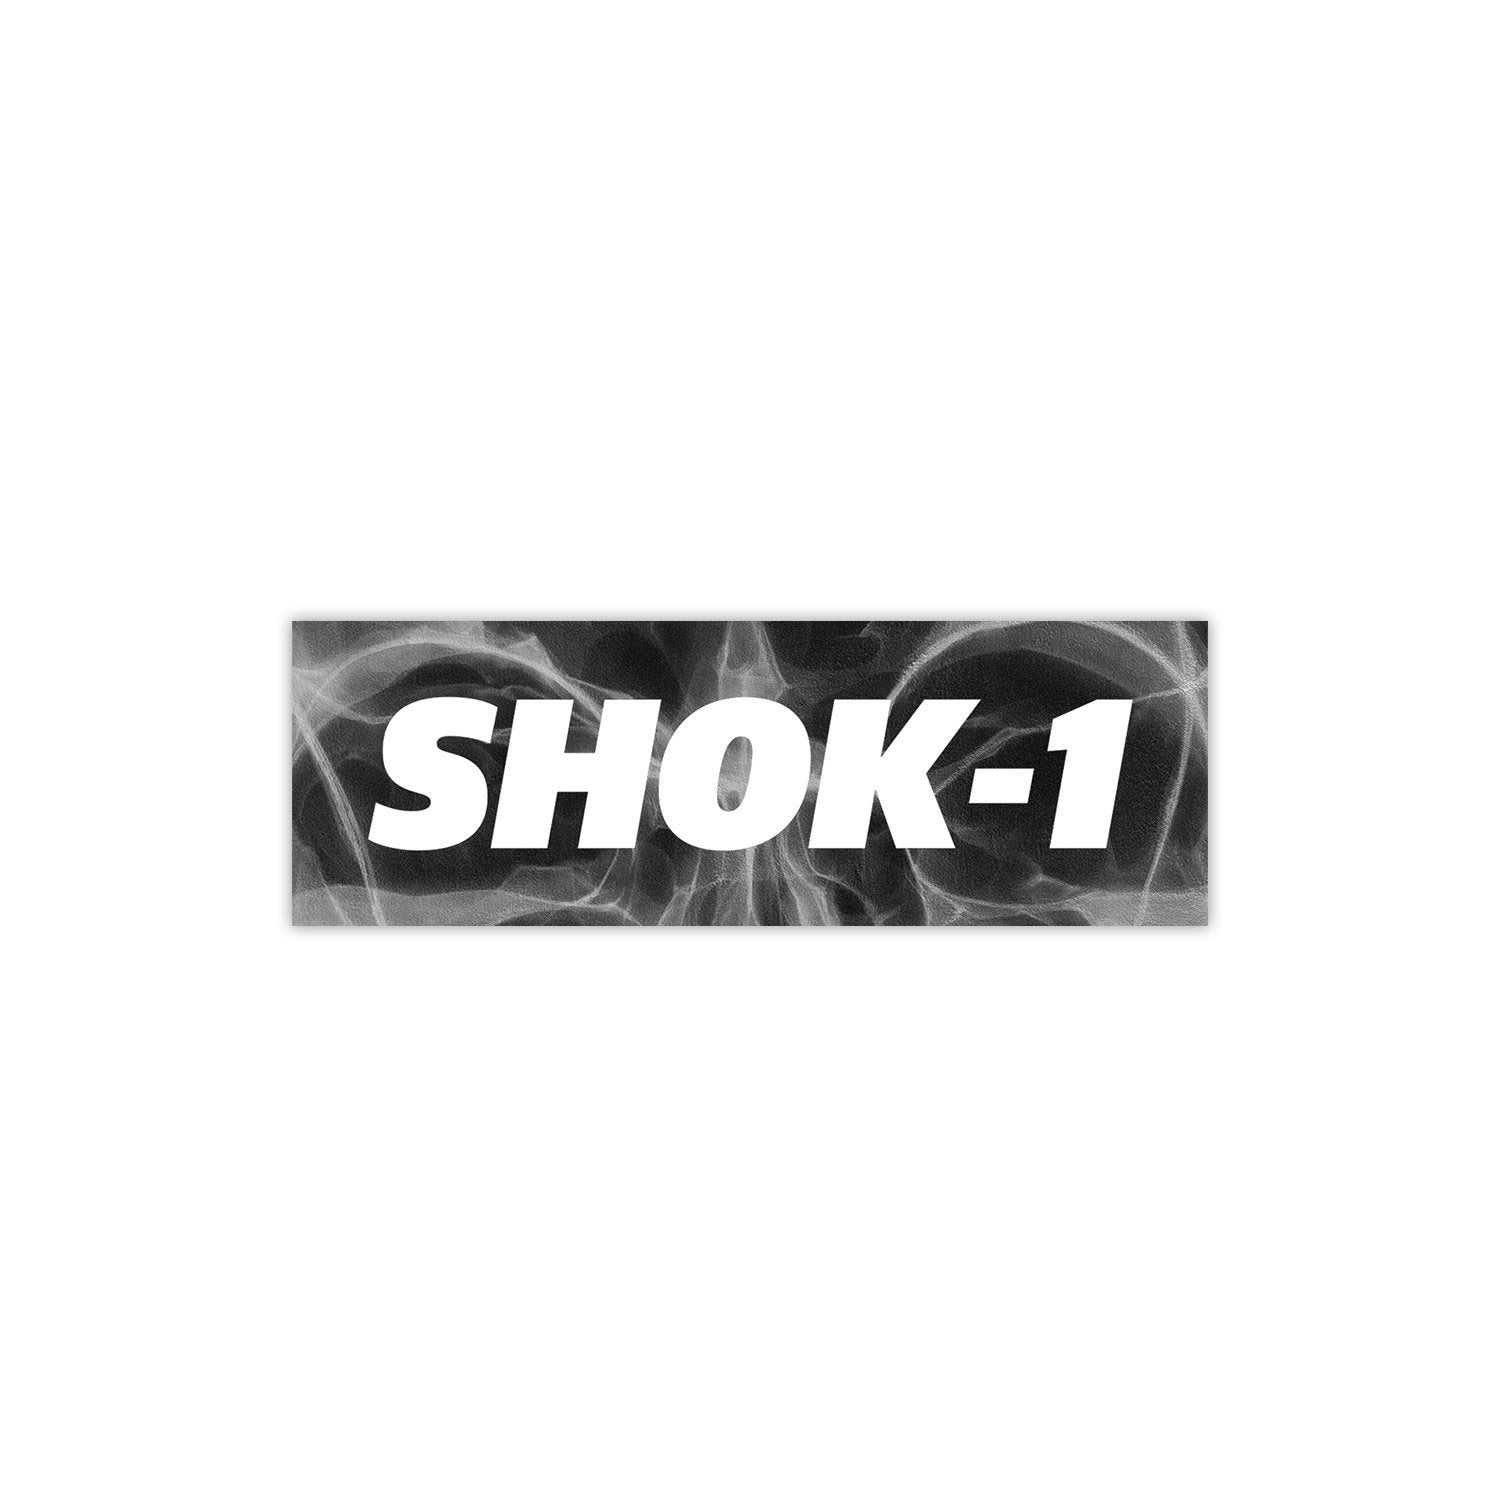 SHOK-1  GEAR  Sticker Pack